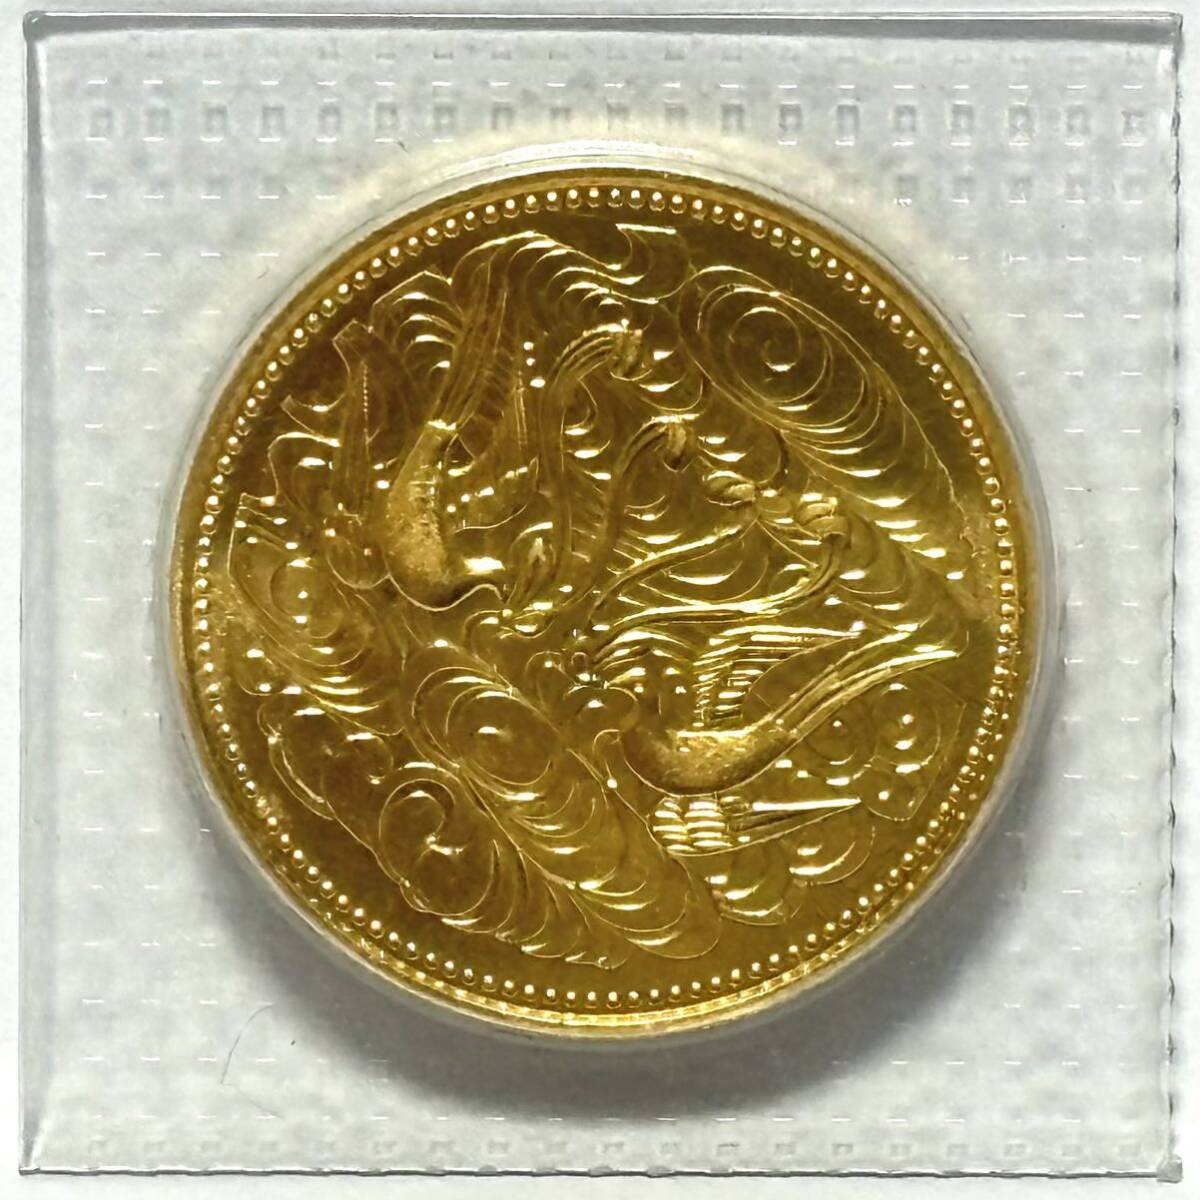 (5) 天皇陛下 御在位六十年 記念硬貨 拾万円 10万円 昭和61年 記念金貨 純金 K24 24金 金貨 ブリスターパック入り 20g_画像1